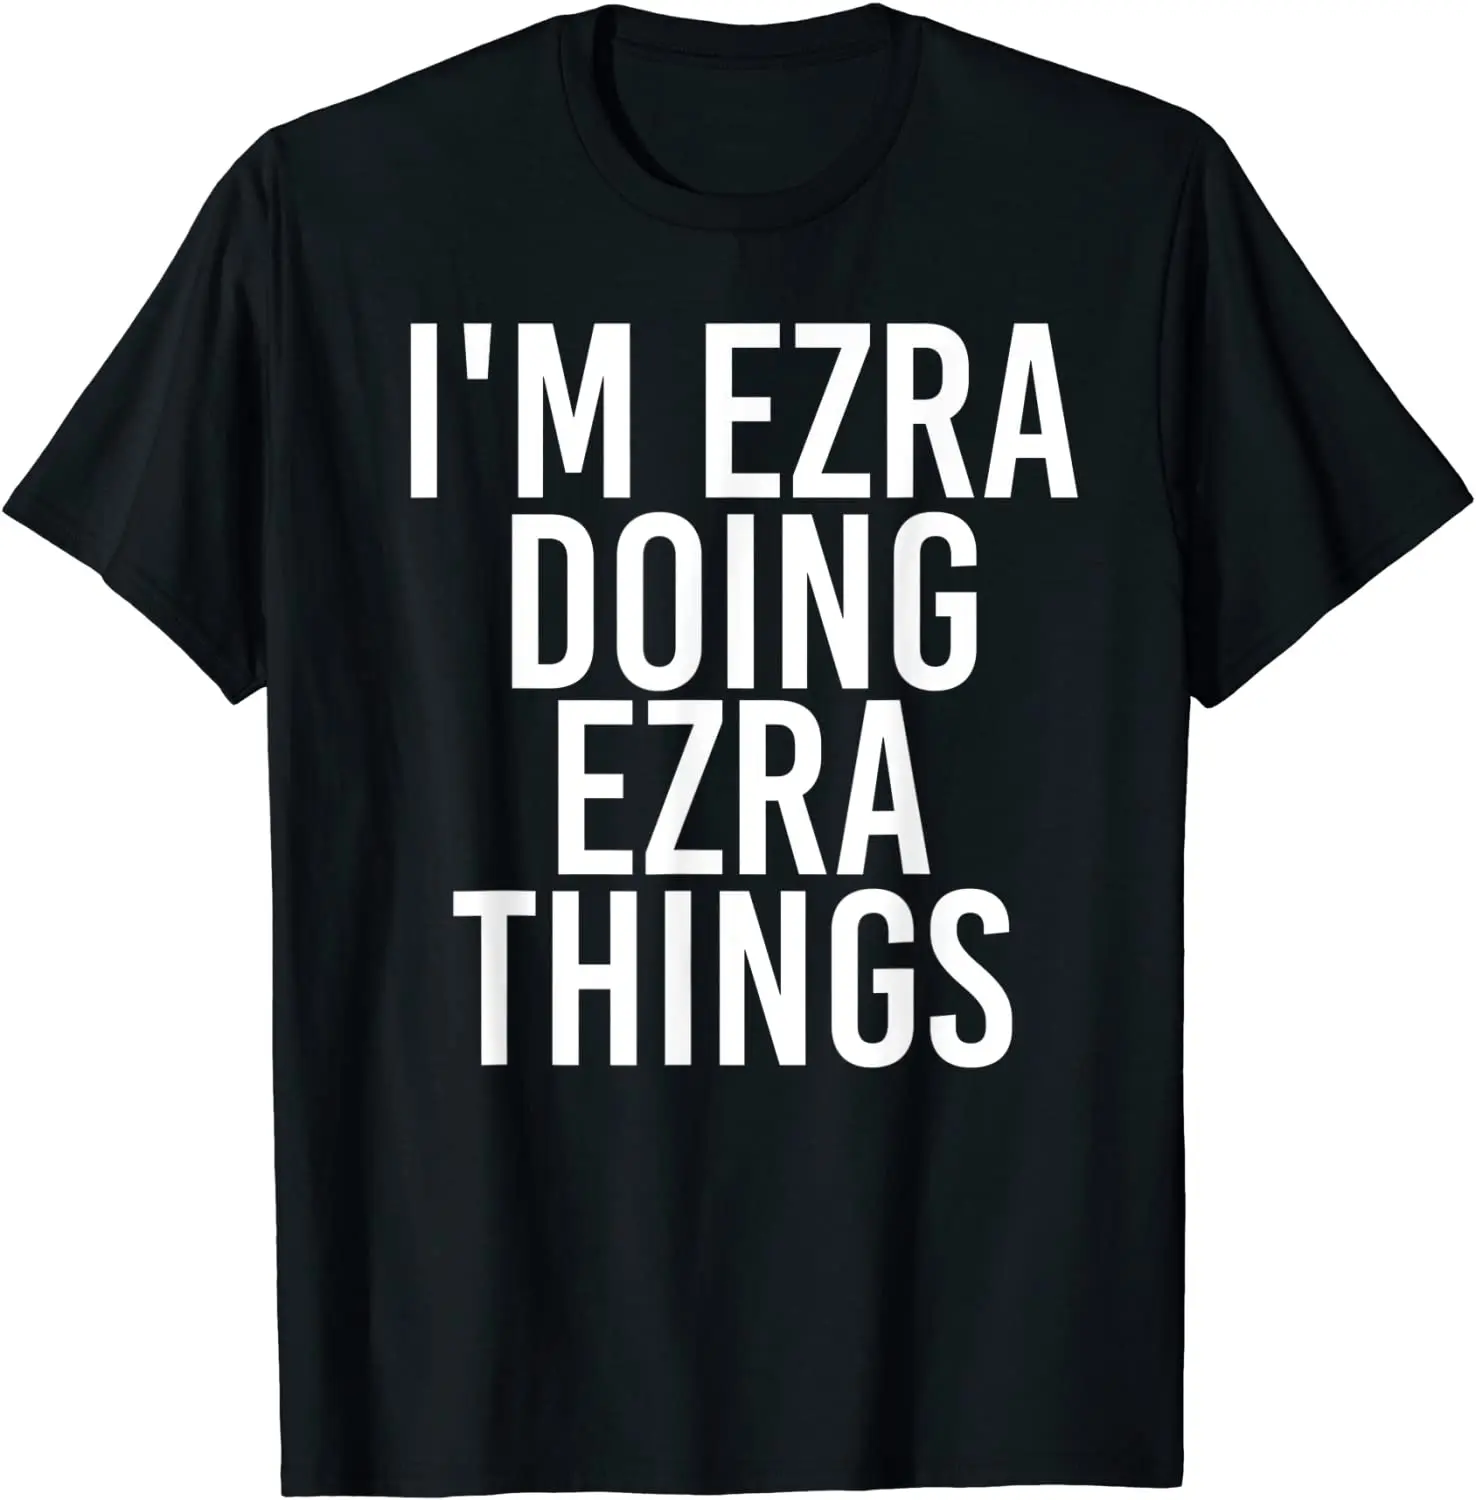 

Забавная Футболка I EZRA DOING EZRA с названием на день рождения, подарок, забавная футболка, хлопковый топ, футболки для мужчин, летние футболки, забавные веселые футболки